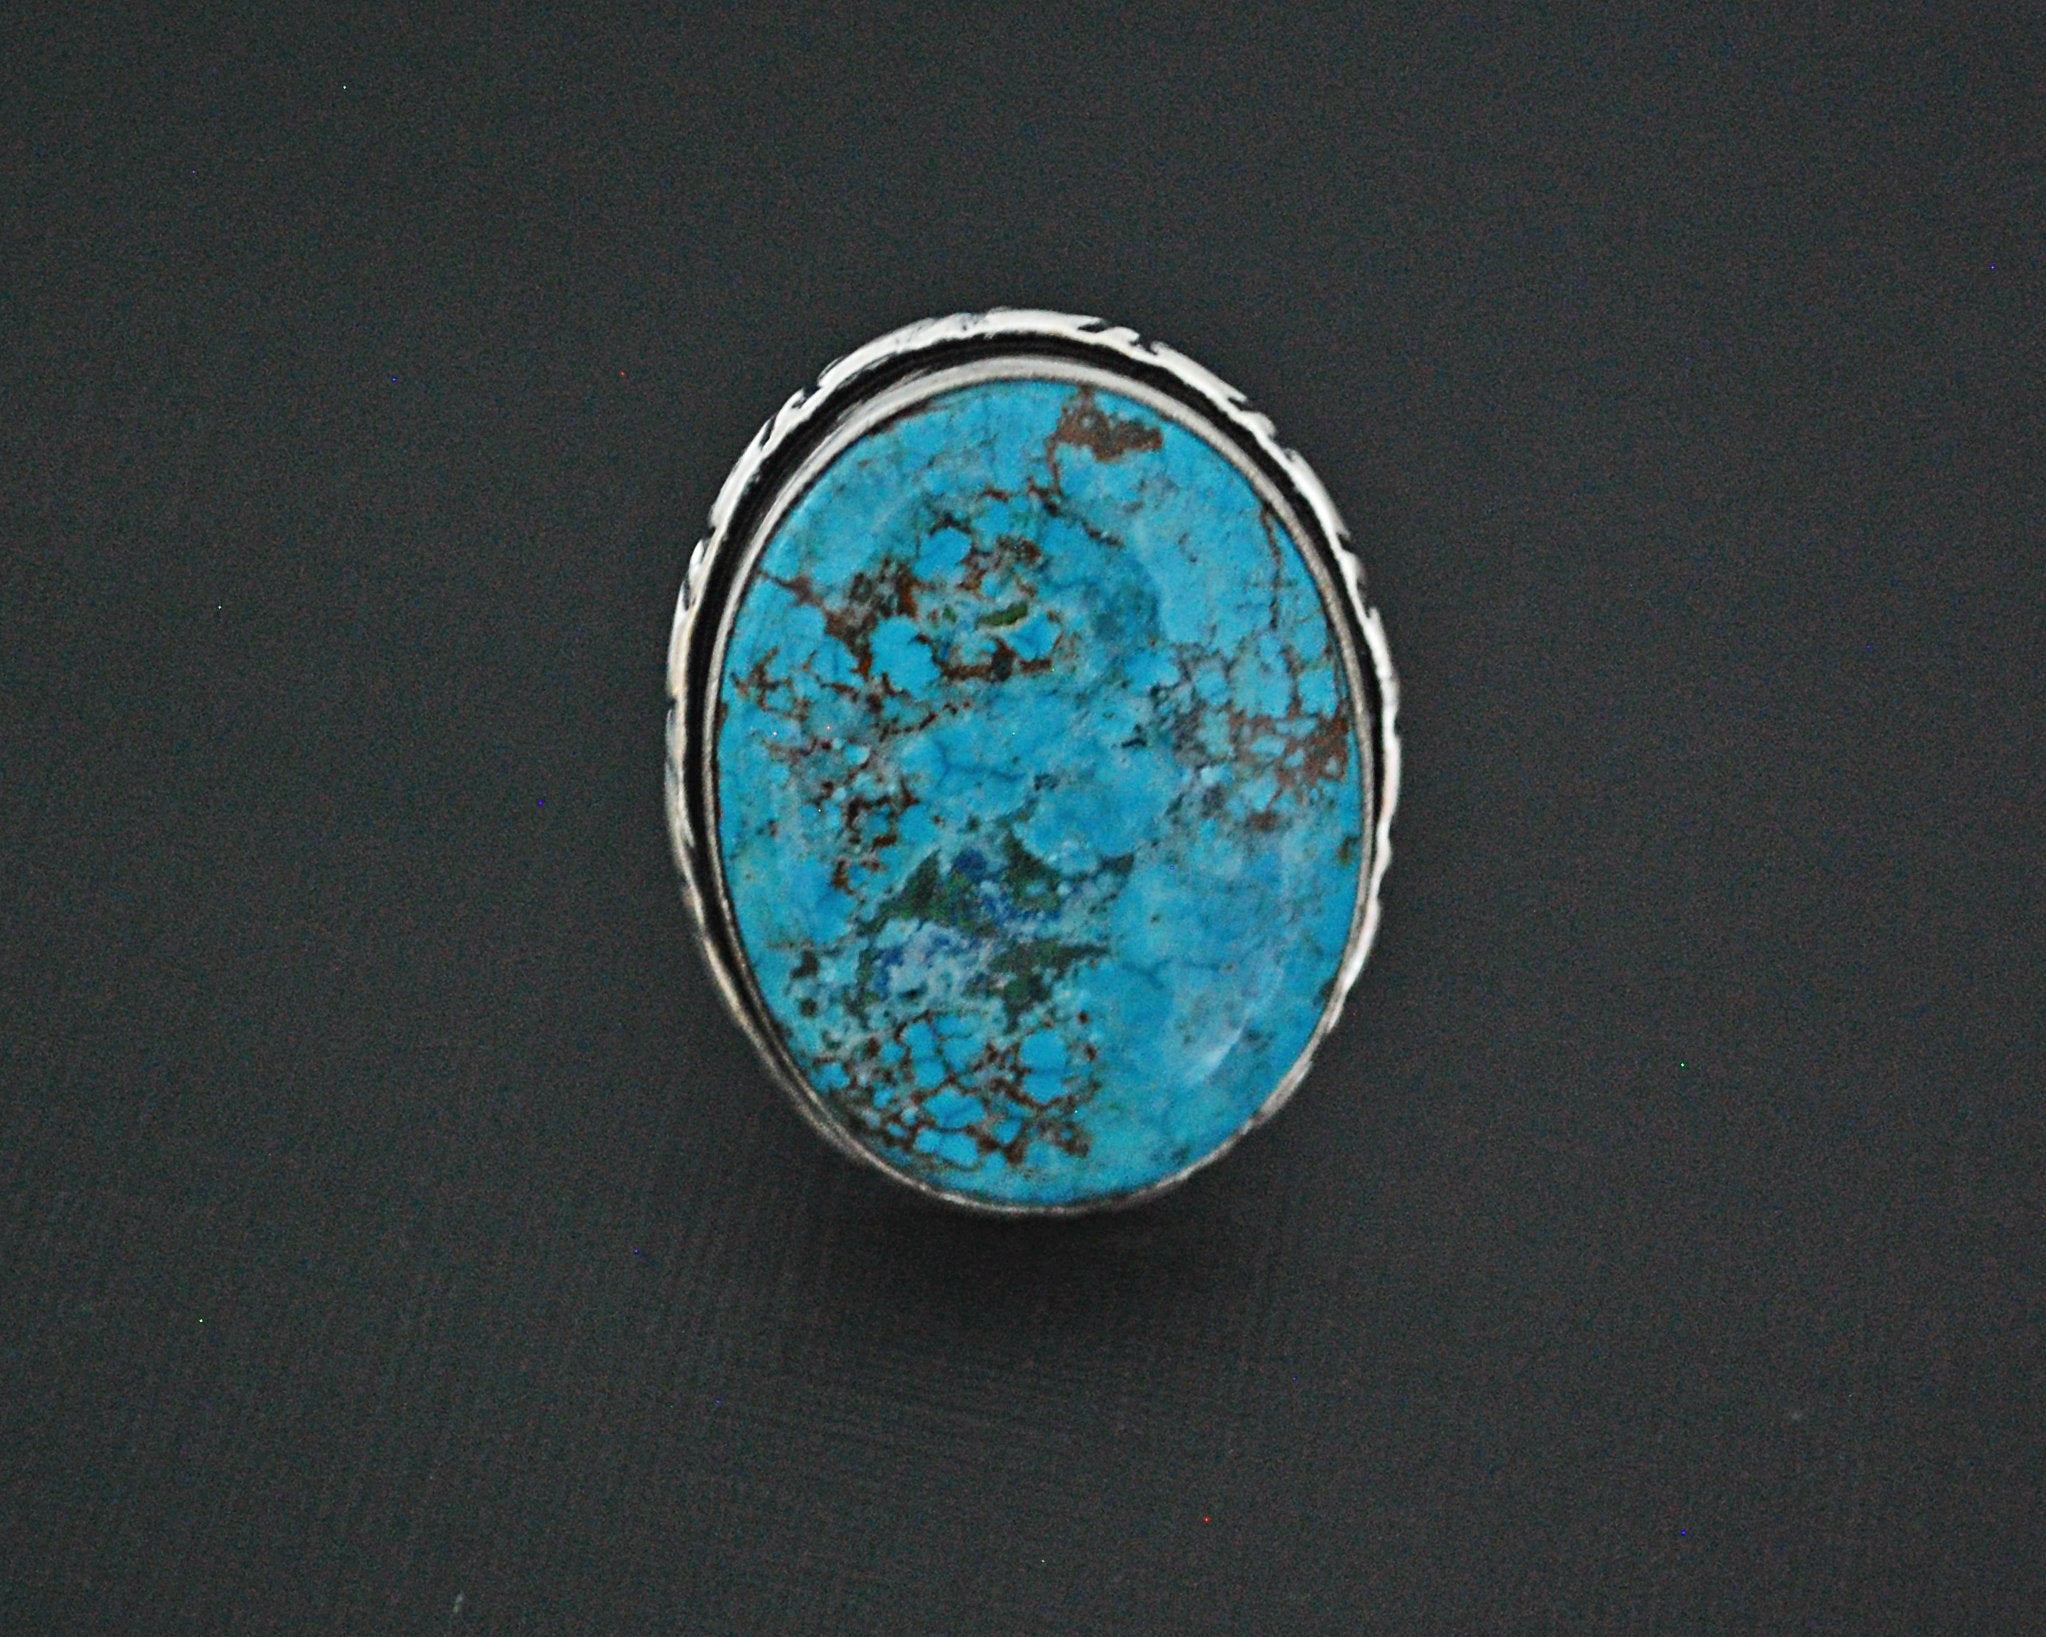 Large Turquoise Ring - Size 8.25